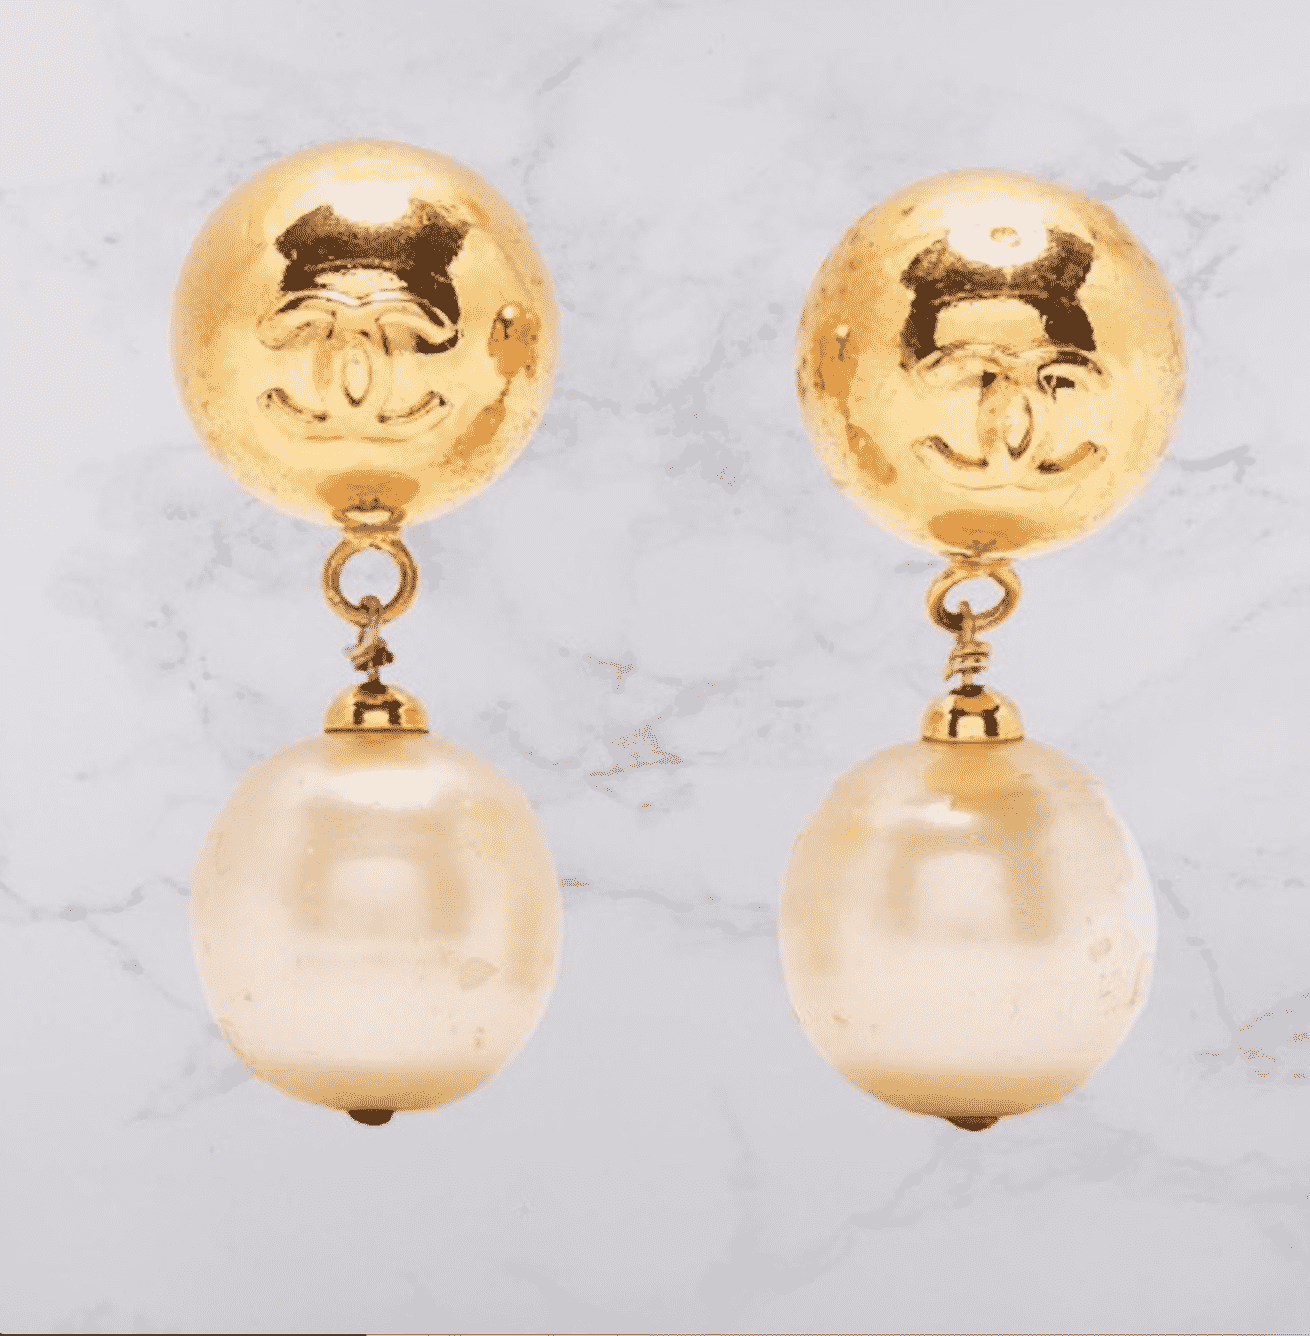 stud gold chanel earrings pearl